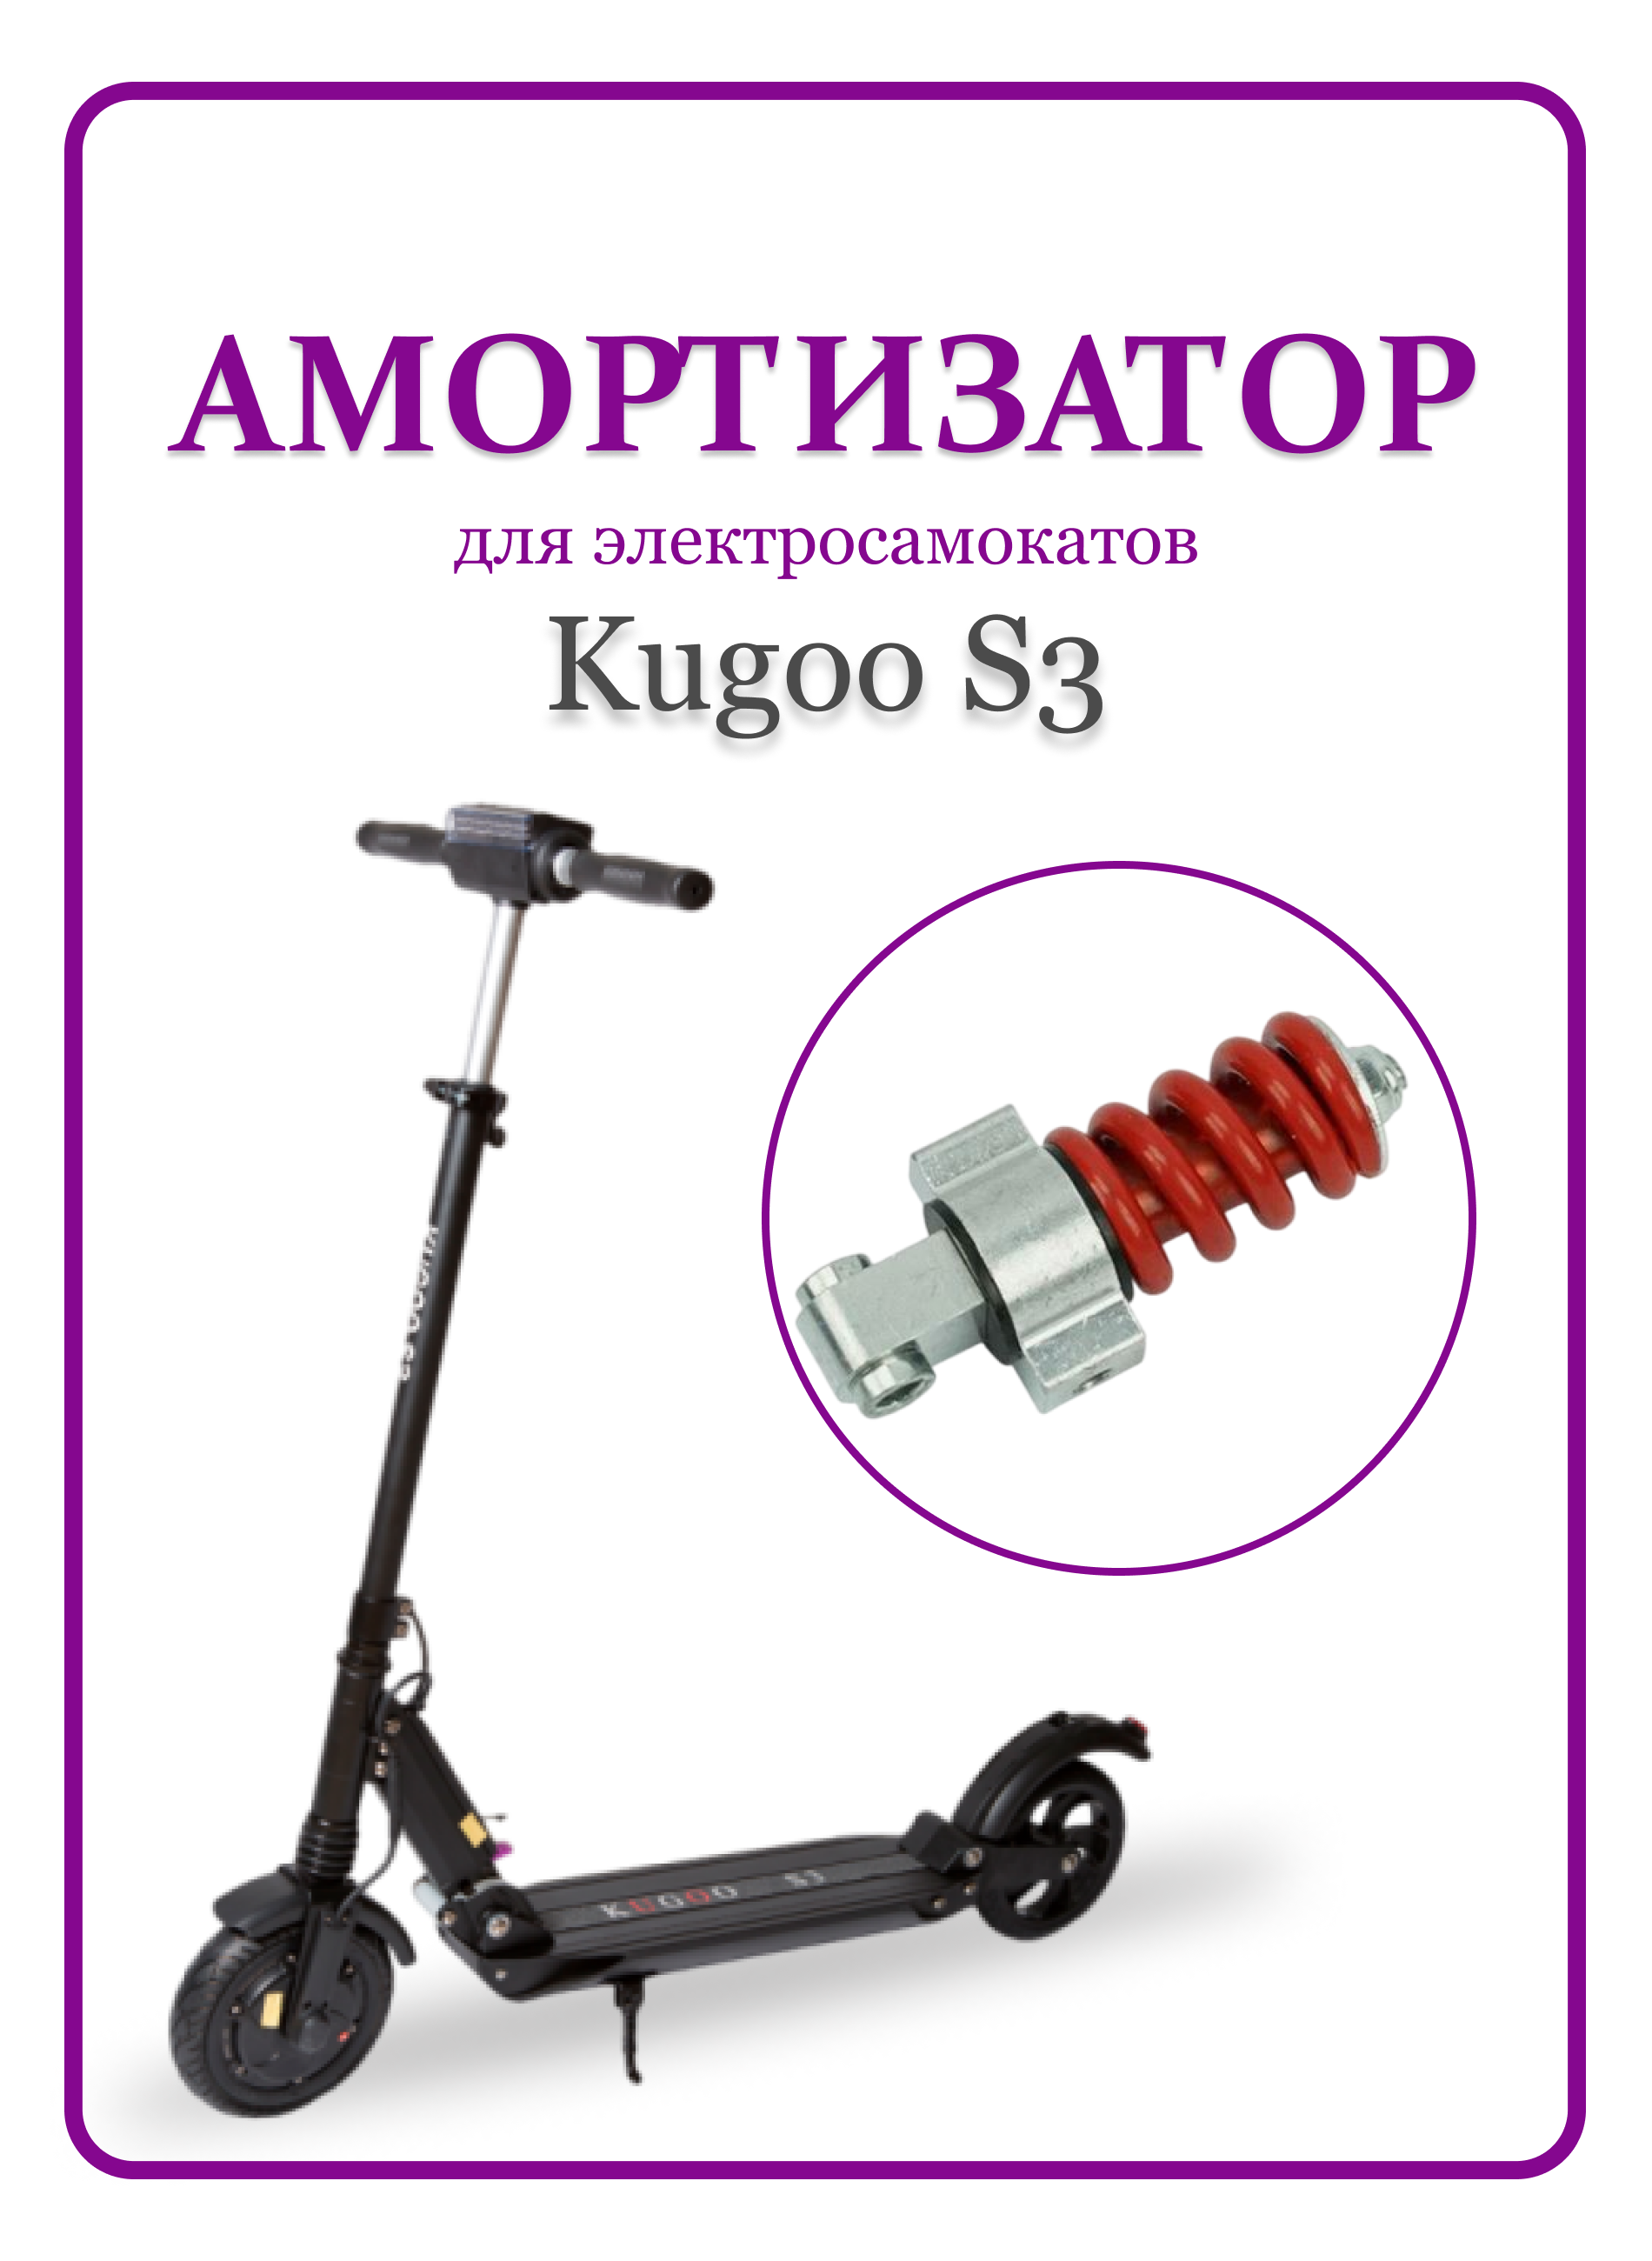 Амортизатор задниq для самоката Kugoo S3